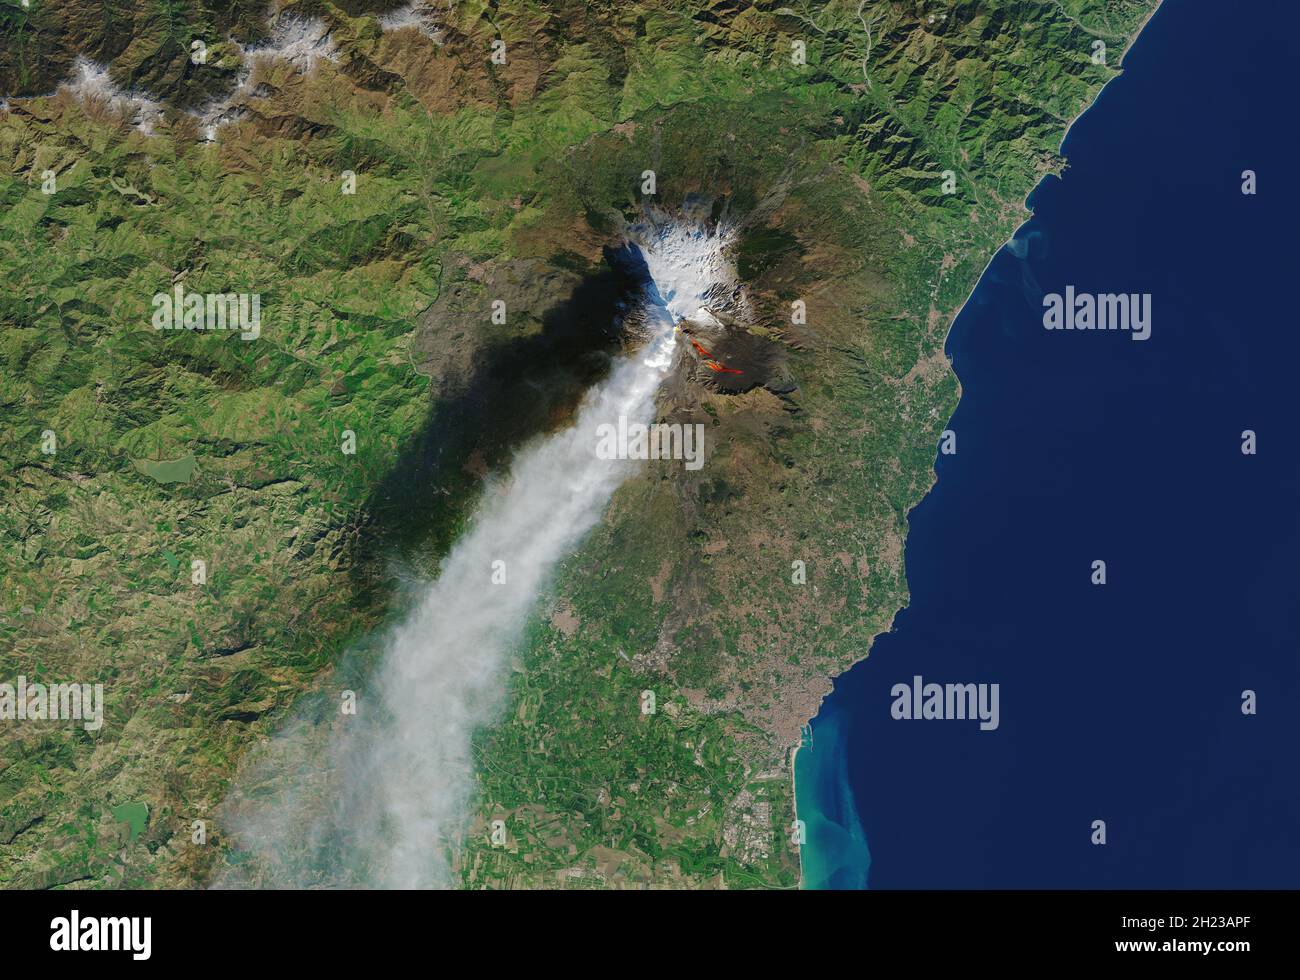 MONTE ETNA, ITALIA - 28 dicembre 2018 - immagine satellitare che mostra l'Etna durante un'eruzione laterale (un'eruzione laterale invece della sua cima) Foto Stock